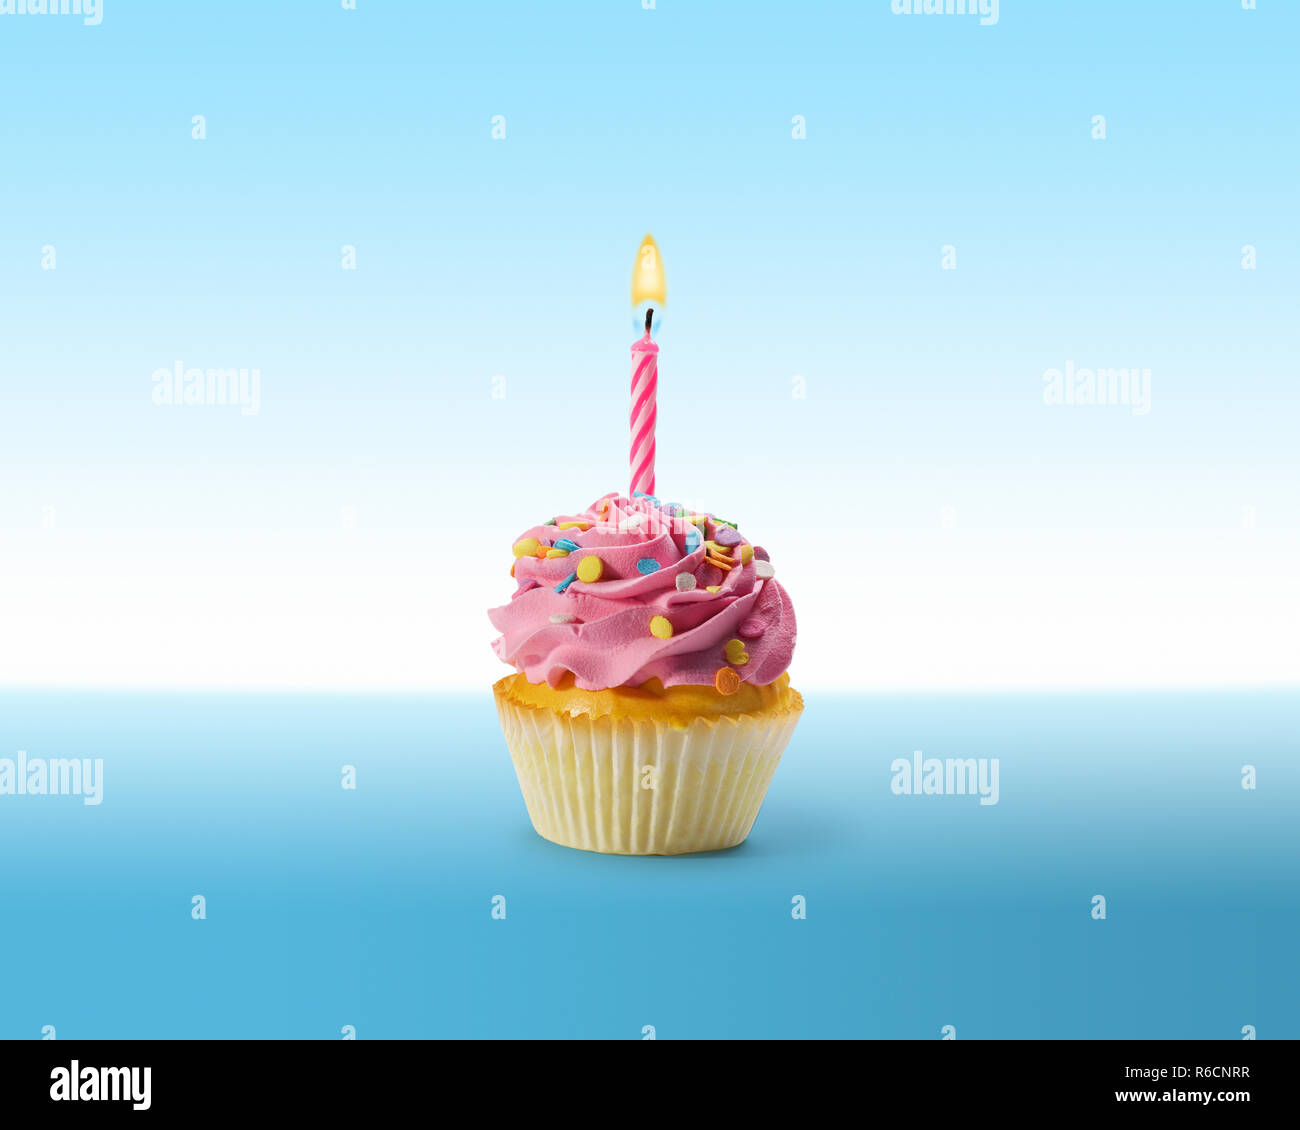 Compleanno cupcake con la glassa e una candela accesa su una superficie di colore blu Foto Stock